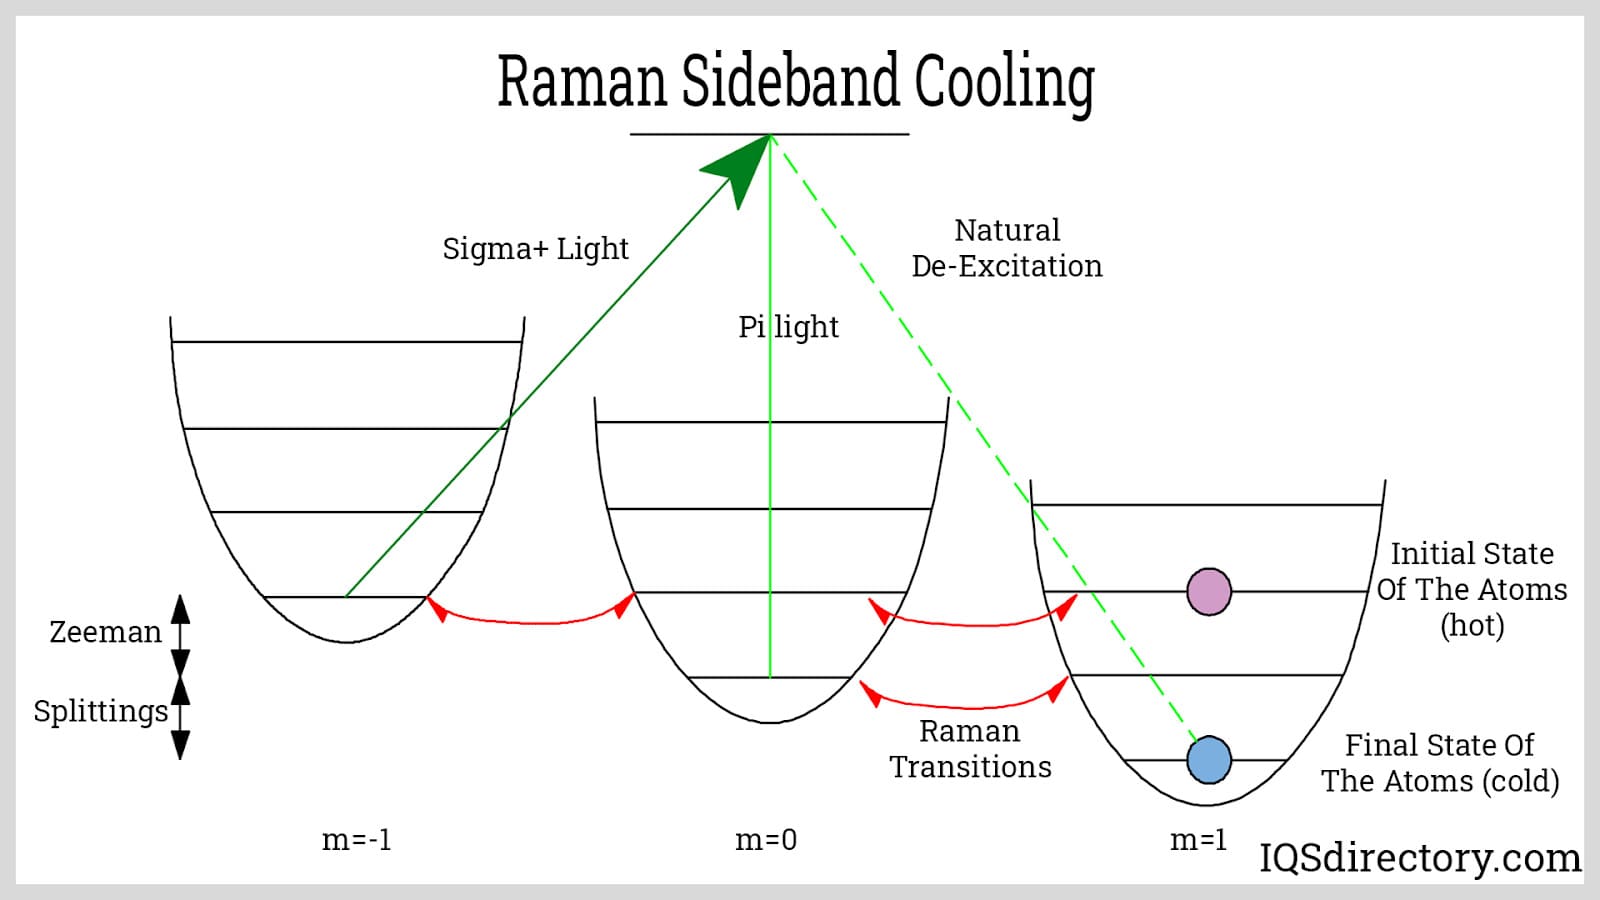 Raman Sideband Cooling